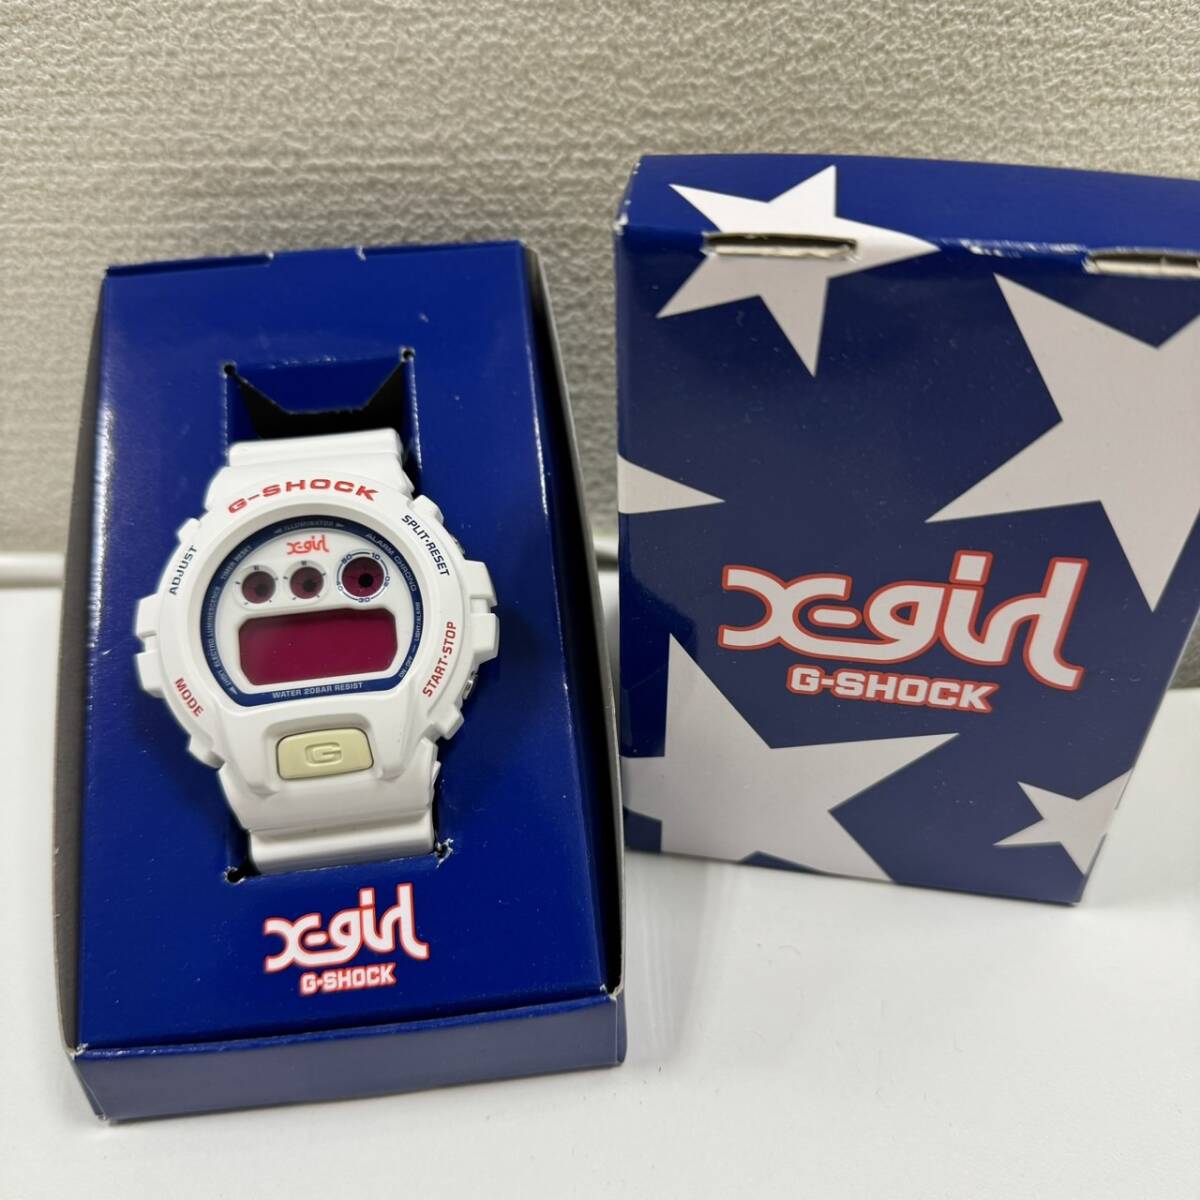 【ART-4102】G-SHOCK4点セット G-8100 ブラック AW-590 シルバー X-girlコラボ ホワイト SHOCK RESIST 腕時計 コレクション ジャンク品